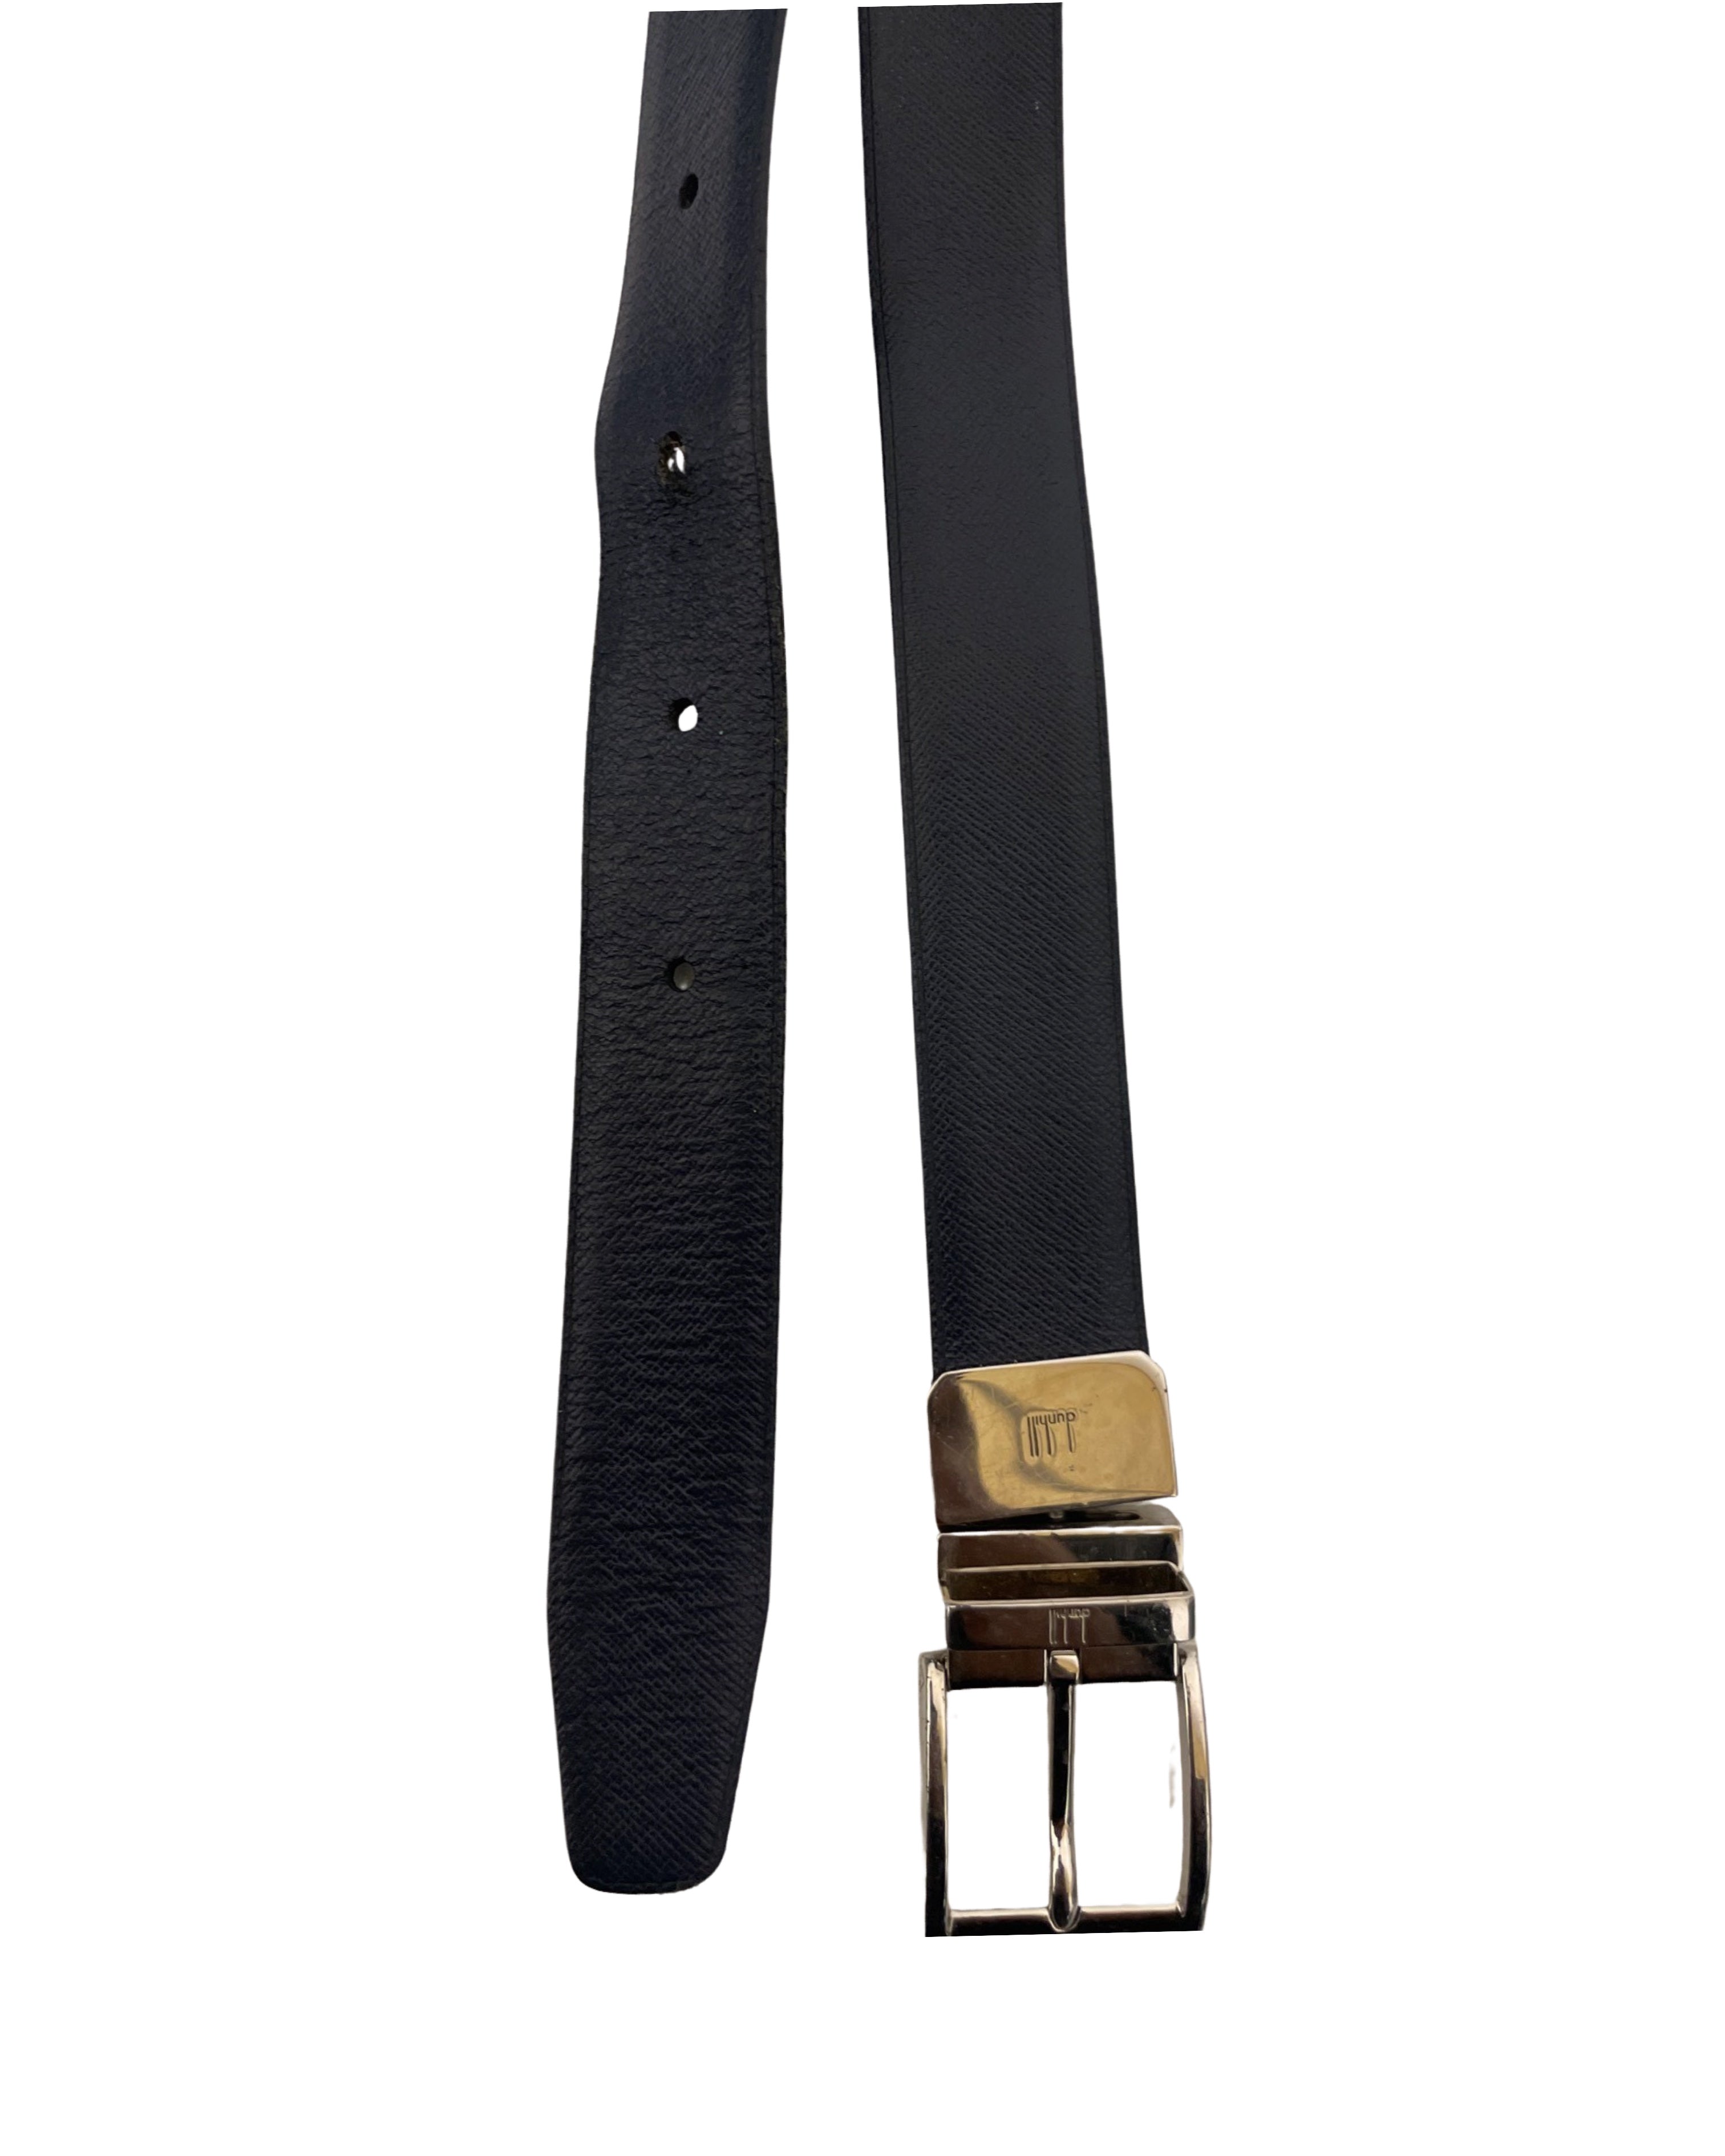 Vintage black genuine leather mens square buckle belt size m